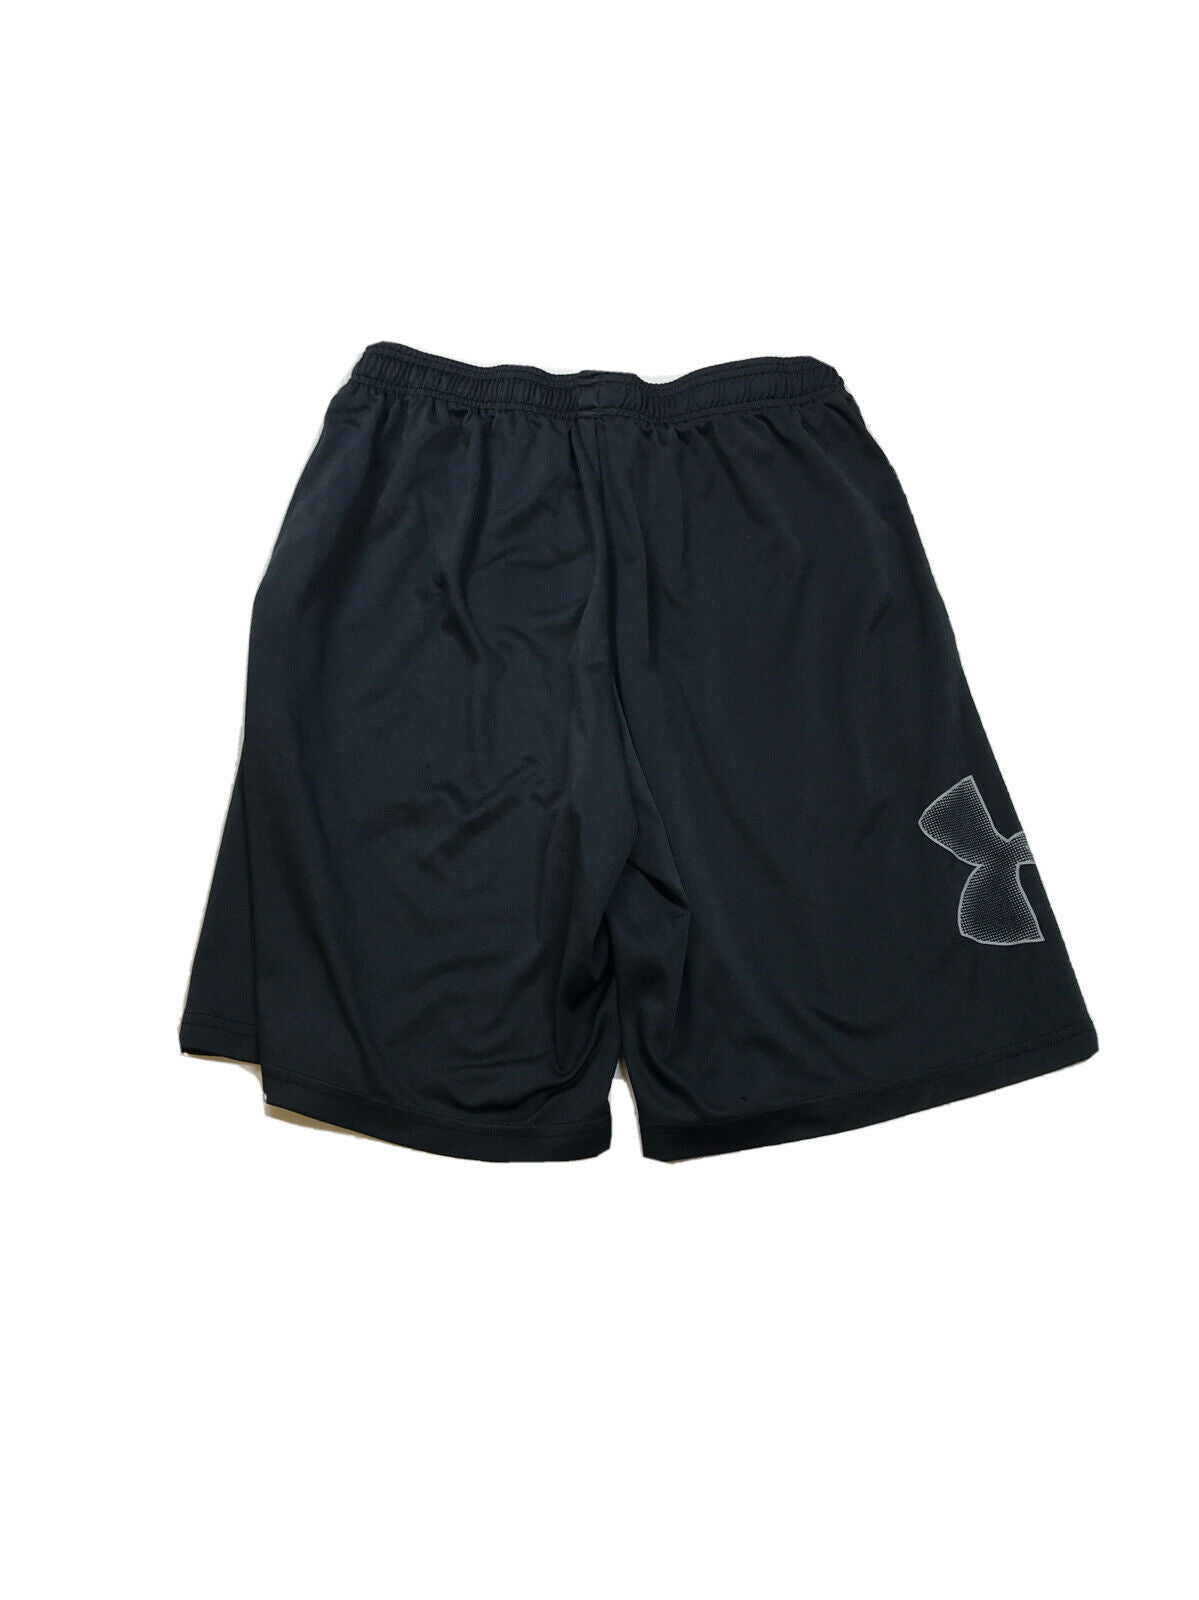 Under Armour Pantalones cortos deportivos HeatGear negros para hombre con bolsillos - S